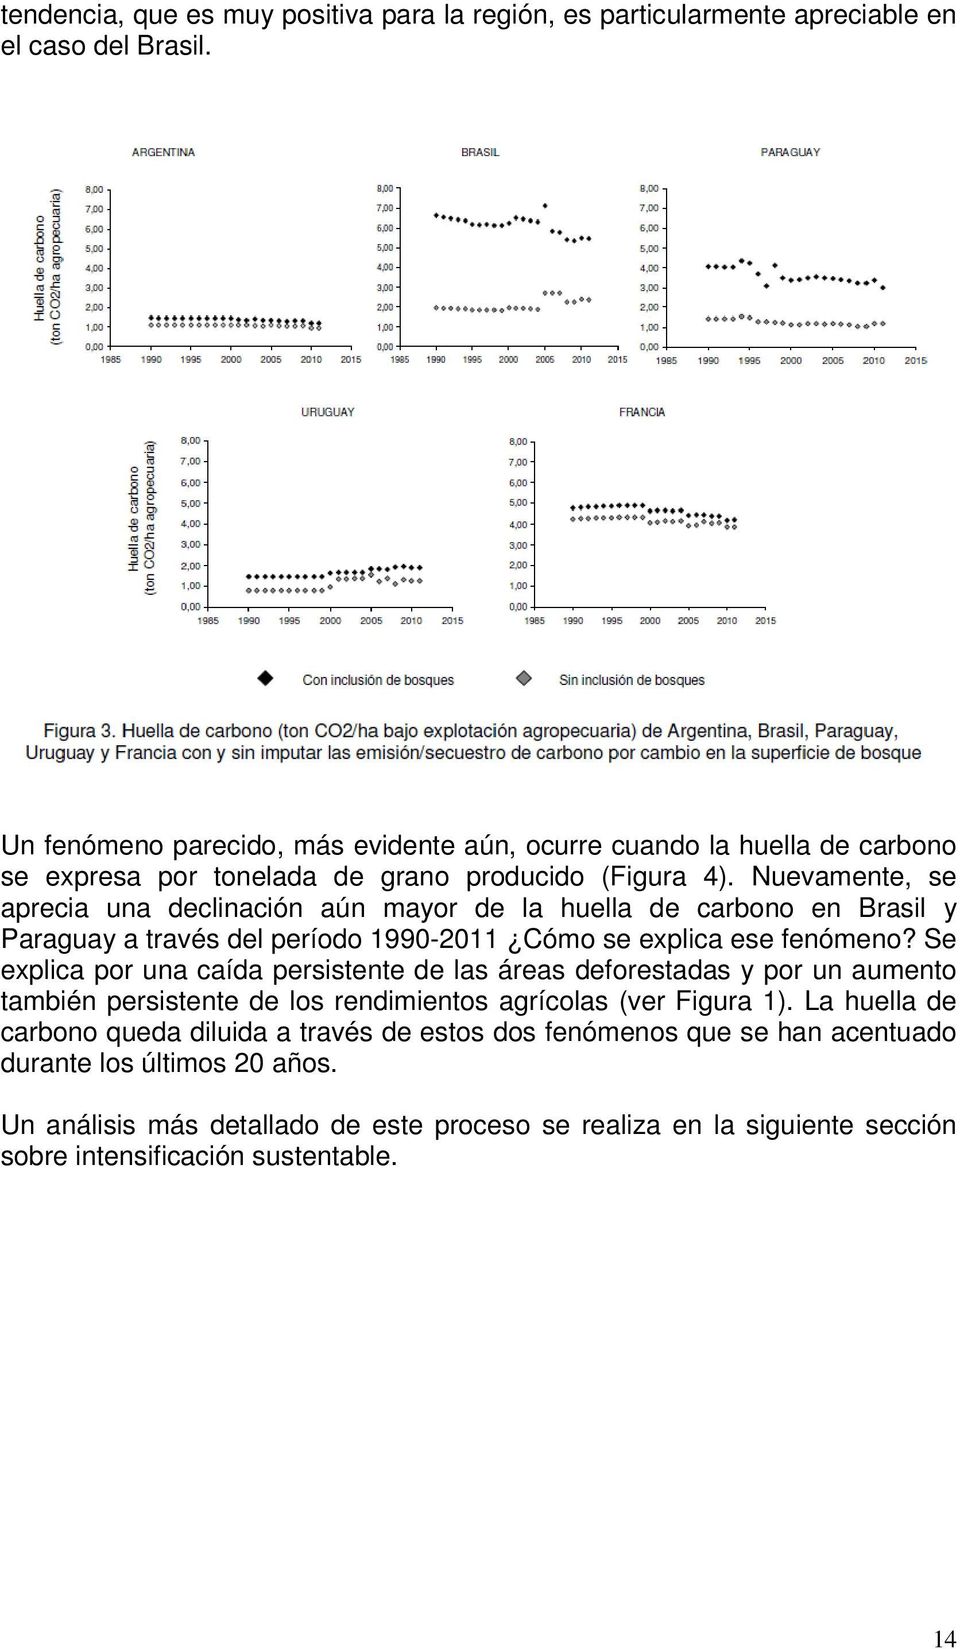 Nuevamente, se aprecia una declinación aún mayor de la huella de carbono en Brasil y Paraguay a través del período 1990-2011 Cómo se explica ese fenómeno?